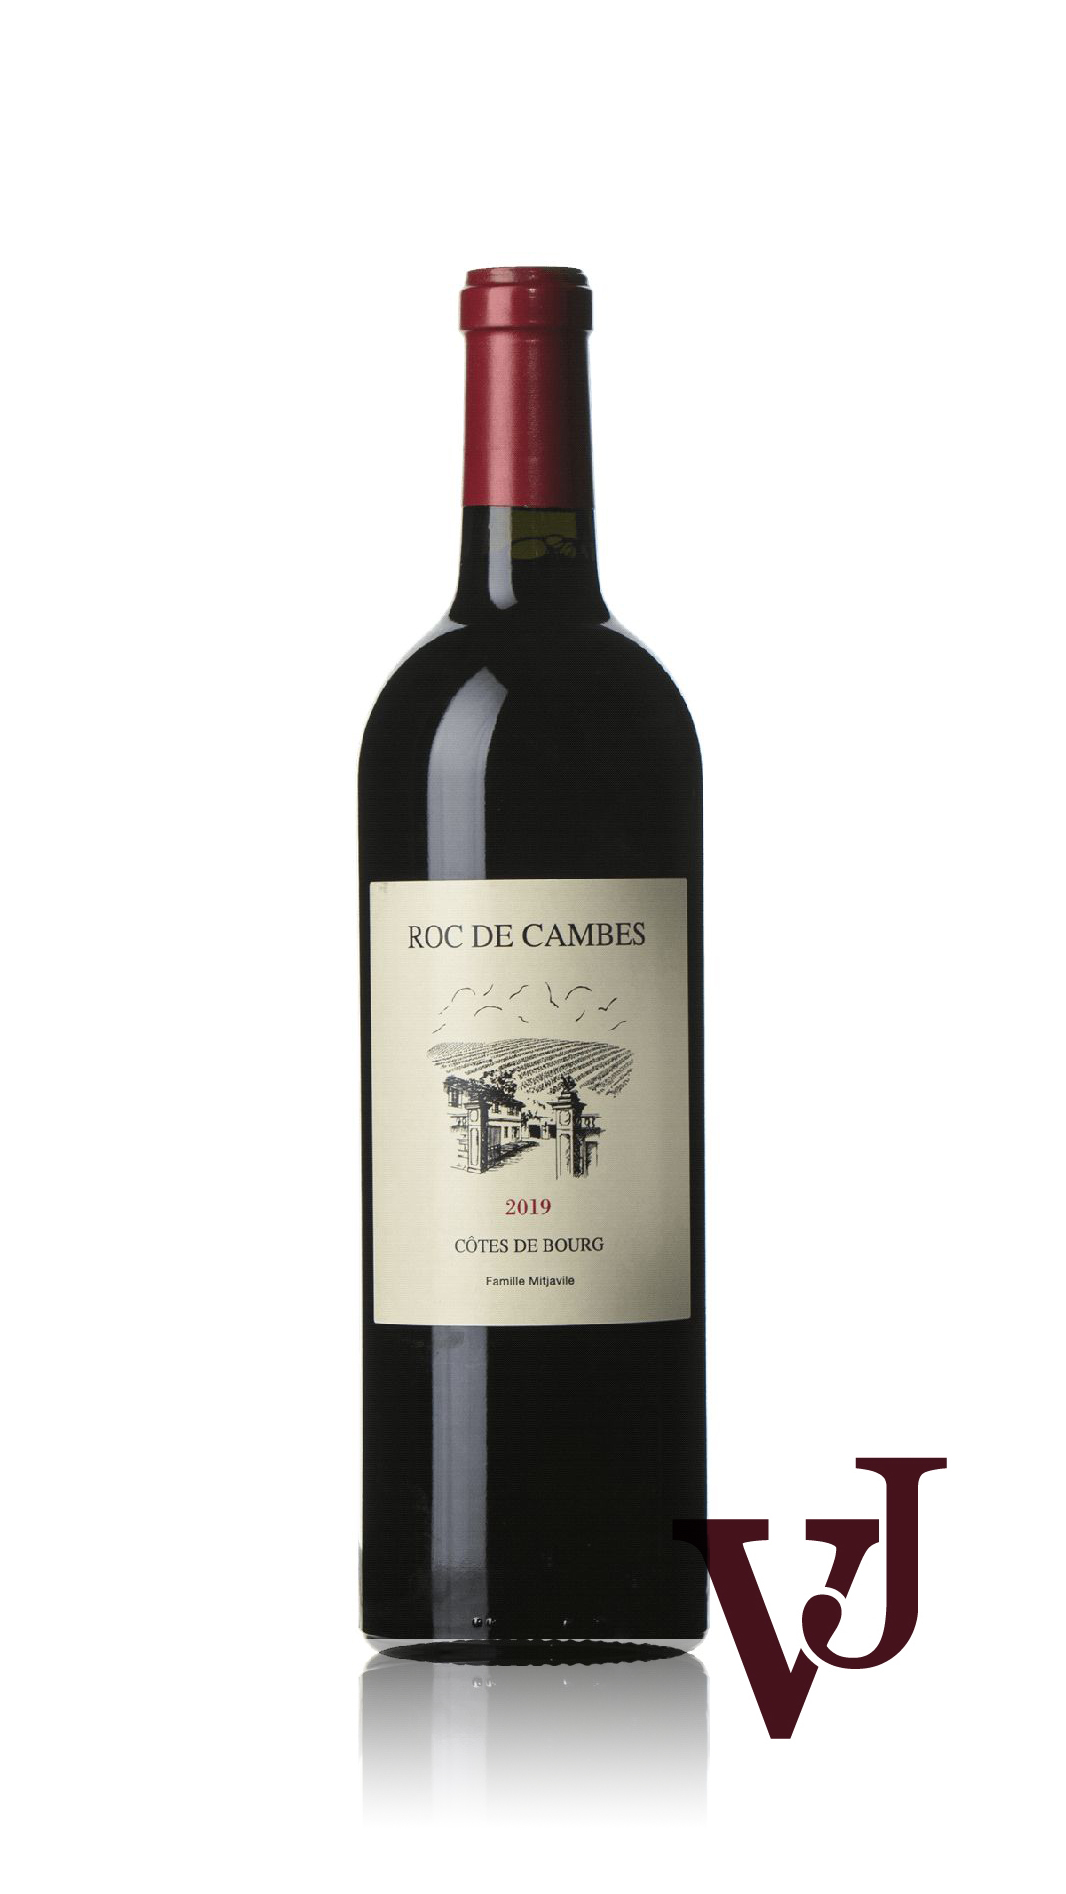 Rött Vin - Roc De Cambes artikel nummer 9491301 från producenten Francois Mitjavile från området Frankrike